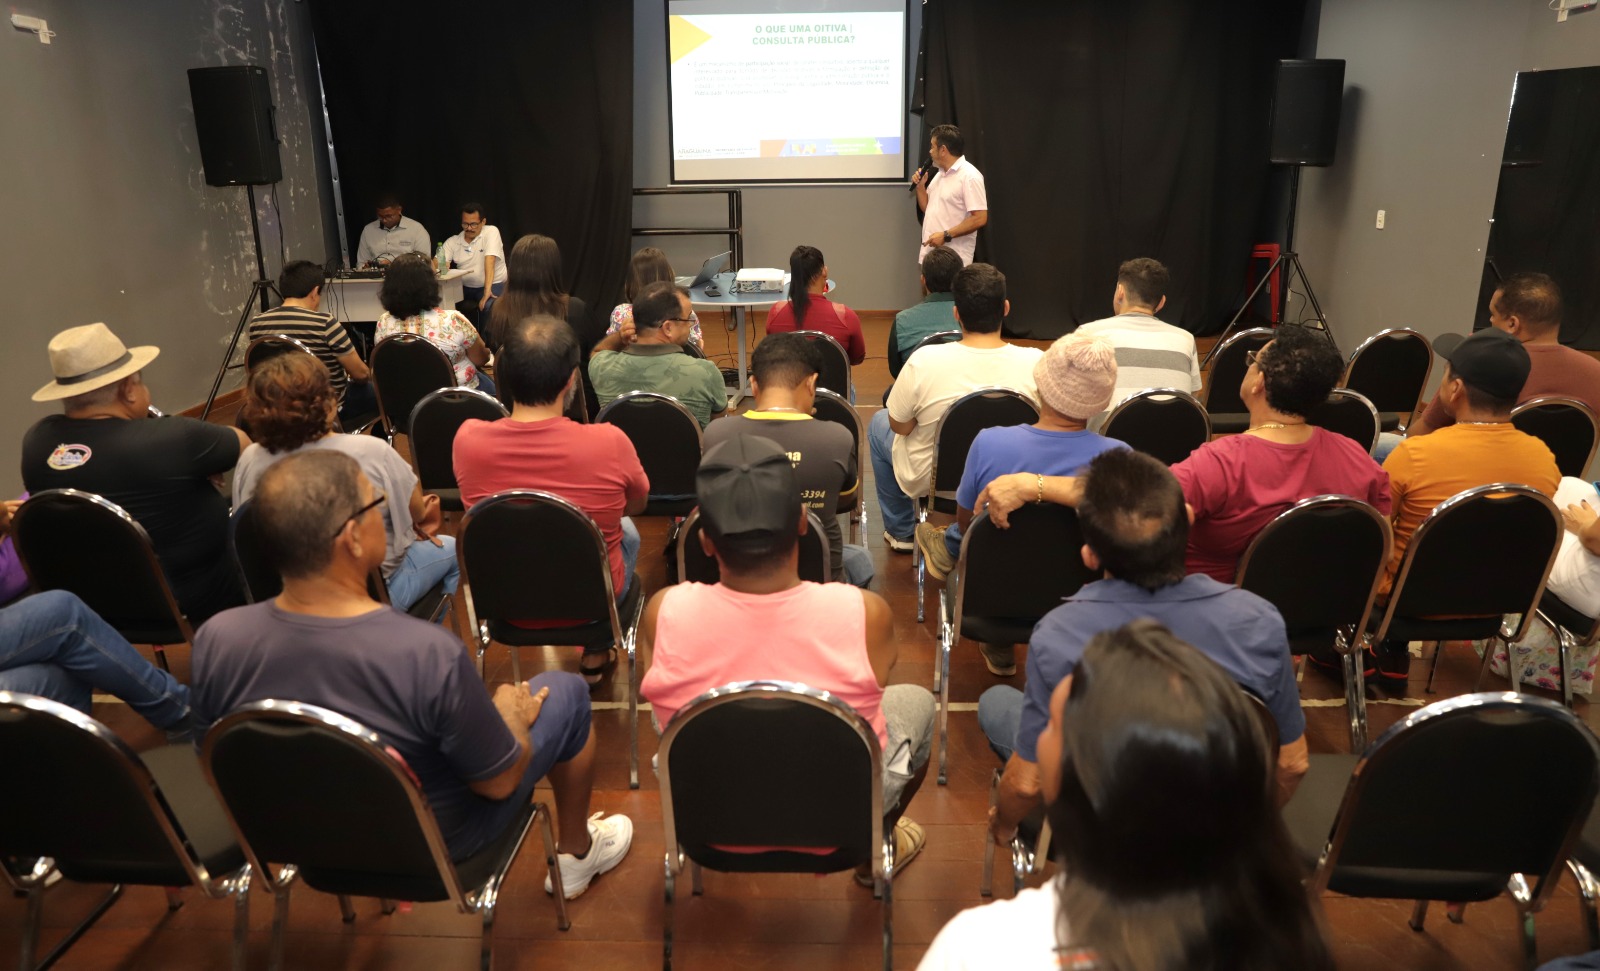 As próximas etapas municipais incluem a reunião com o Conselho de Cultura e um segundo encontro com a classe, até o final de maio. Araguaína tem a previsão de receber R$ 1,2 milhões anualmente até 2027